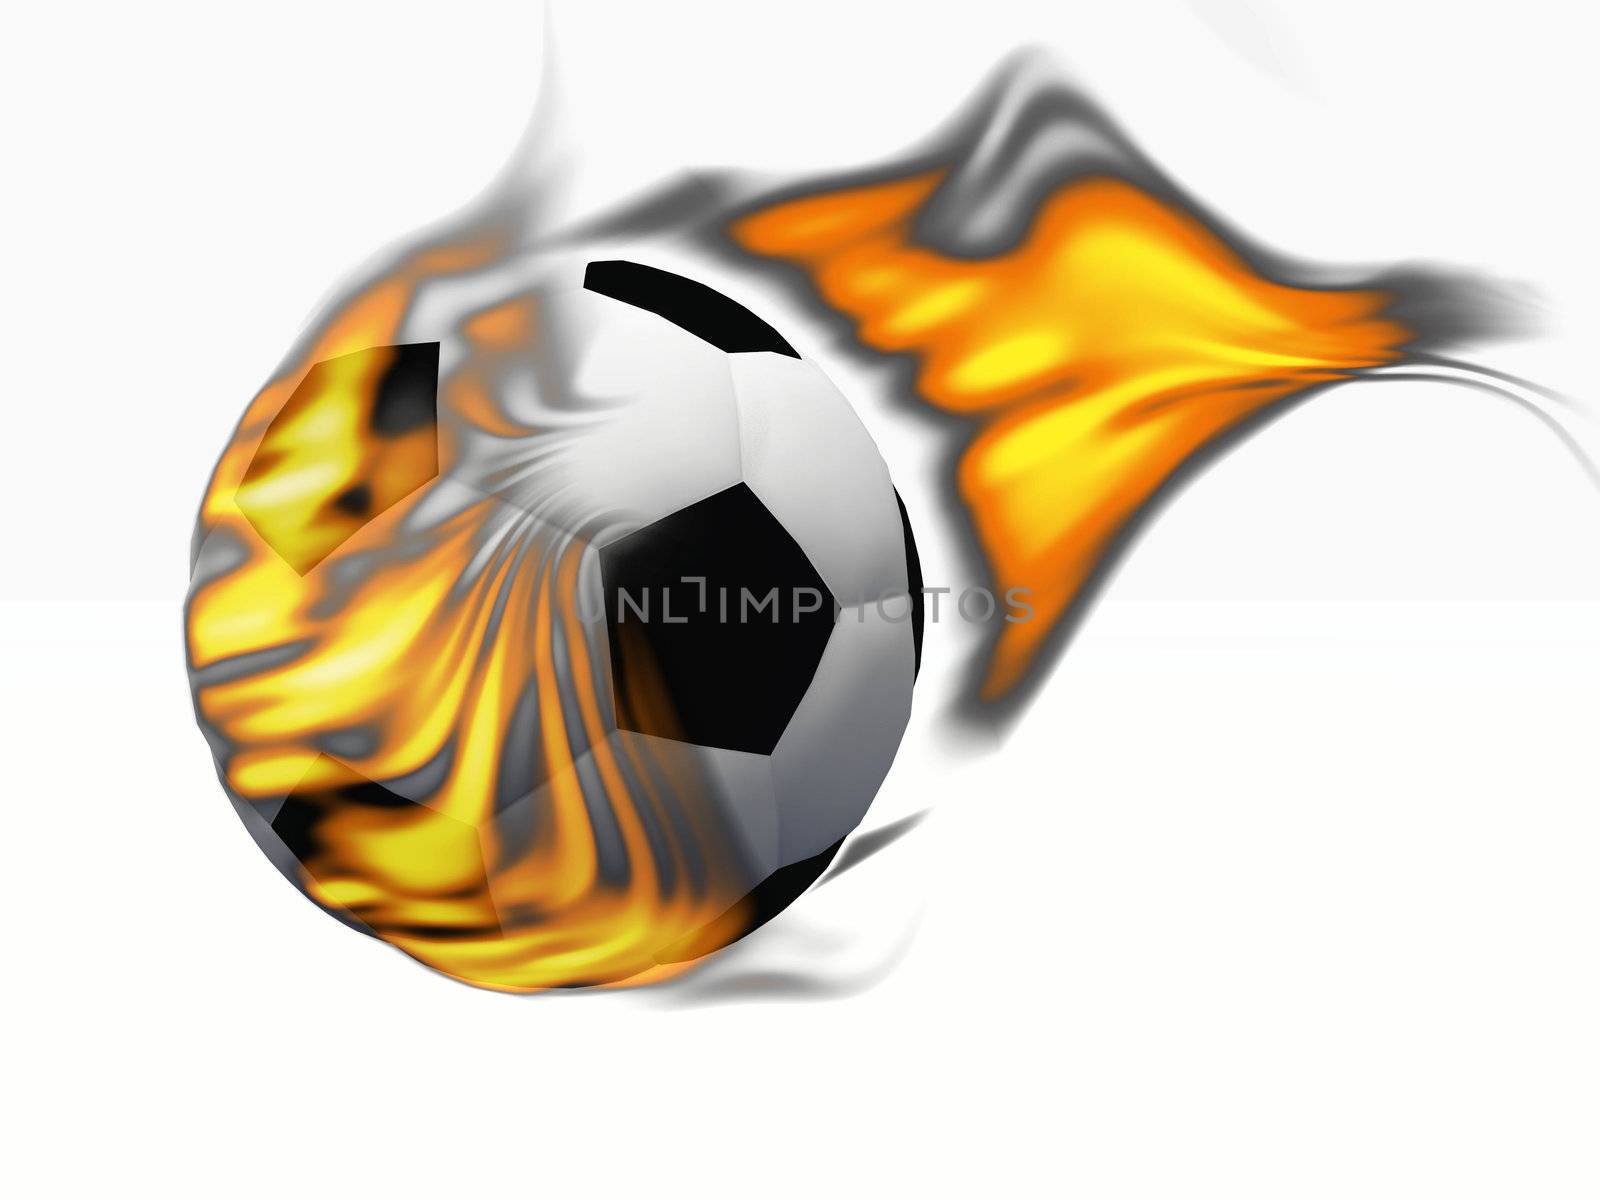 a soccer ball sets fire